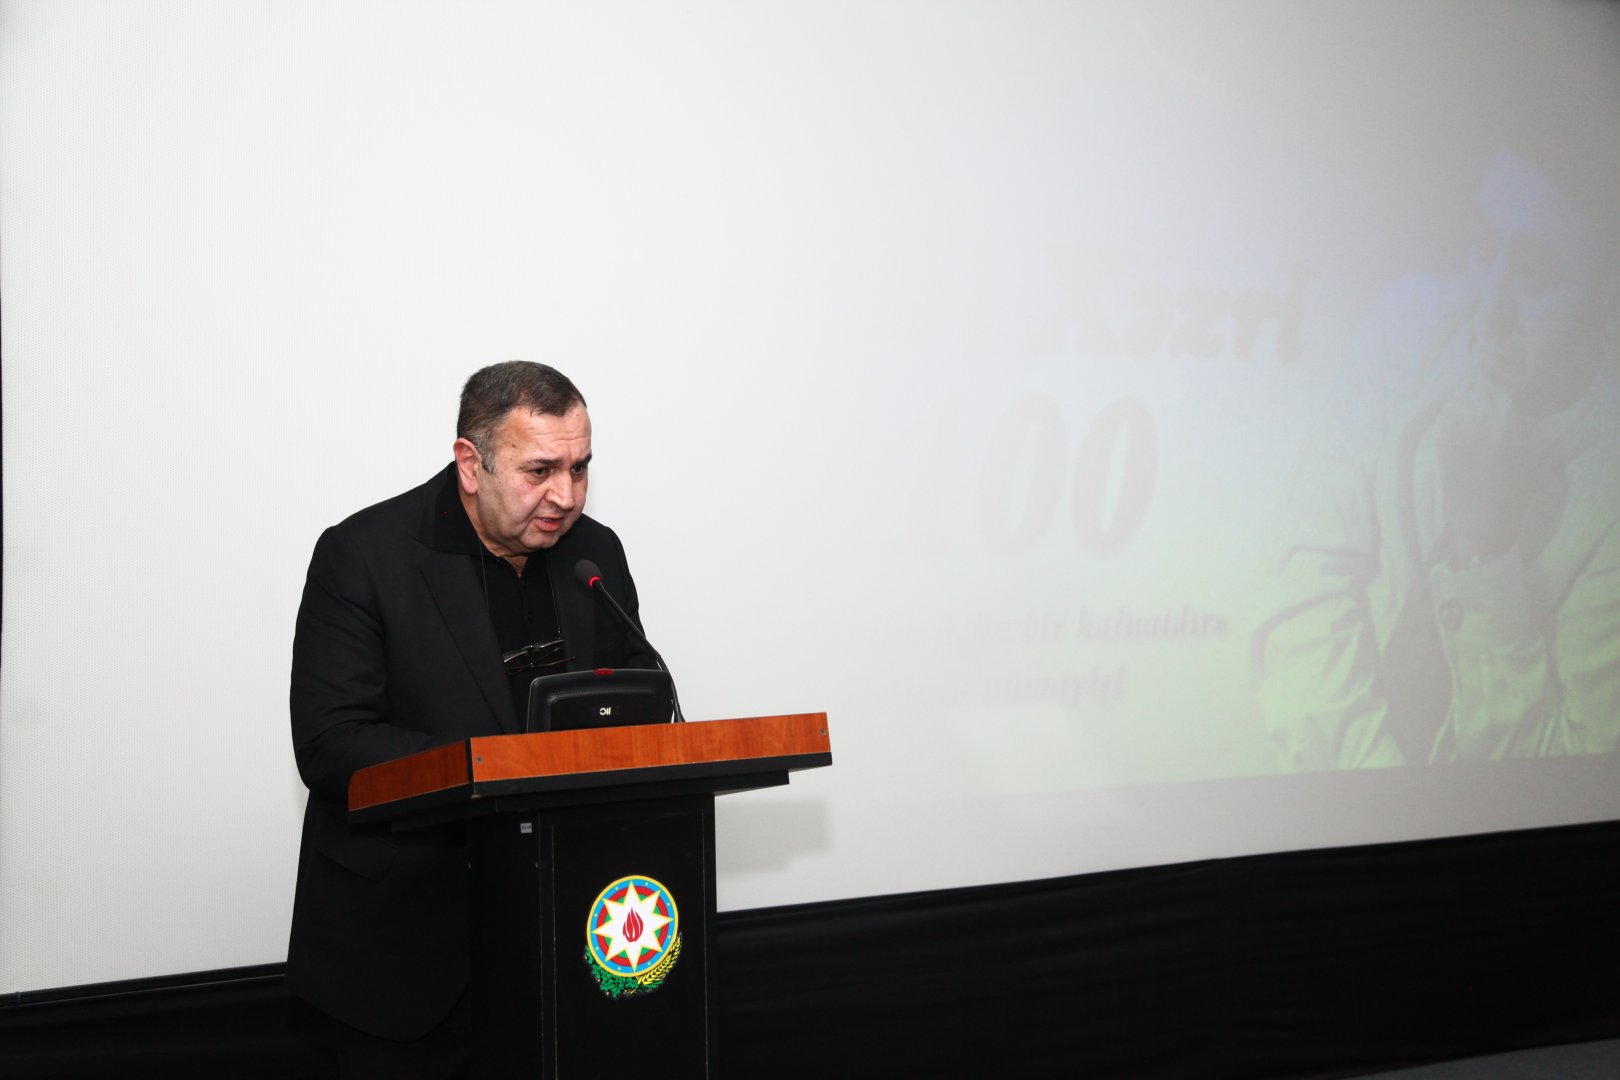 В Баку показали фильм, посвященный Наби Хазри (ФОТО)